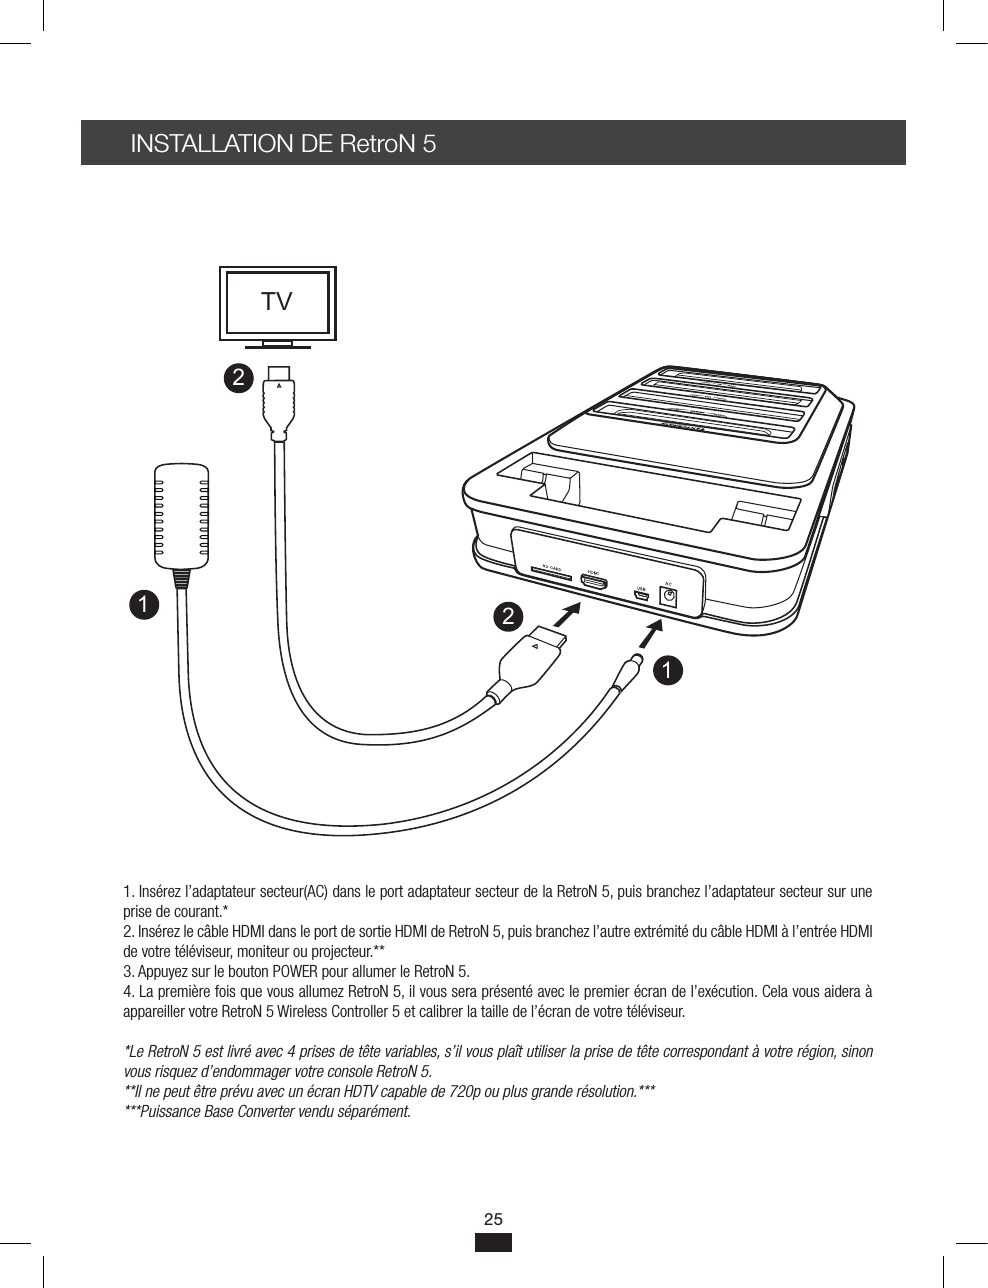 INSTALLATION DE RetroN 5 1. Insérez l’adaptateur secteur(AC) dans le port adaptateur secteur de la RetroN 5, puis branchez l’adaptateur secteur sur une prise de courant.*2. Insérez le câble HDMI dans le port de sortie HDMI de RetroN 5, puis branchez l’autre extrémité du câble HDMI à l’entrée HDMI de votre téléviseur, moniteur ou projecteur.**3. Appuyez sur le bouton POWER pour allumer le RetroN 5.4. La première fois que vous allumez RetroN 5, il vous sera présenté avec le premier écran de l’exécution. Cela vous aidera à appareiller votre RetroN 5 Wireless Controller 5 et calibrer la taille de l’écran de votre téléviseur.*Le RetroN 5 est livré avec 4 prises de tête variables, s’il vous plaît utiliser la prise de tête correspondant à votre région, sinon vous risquez d’endommager votre console RetroN 5.**Il ne peut être prévu avec un écran HDTV capable de 720p ou plus grande résolution.******Puissance Base Converter vendu séparément.1122TV25